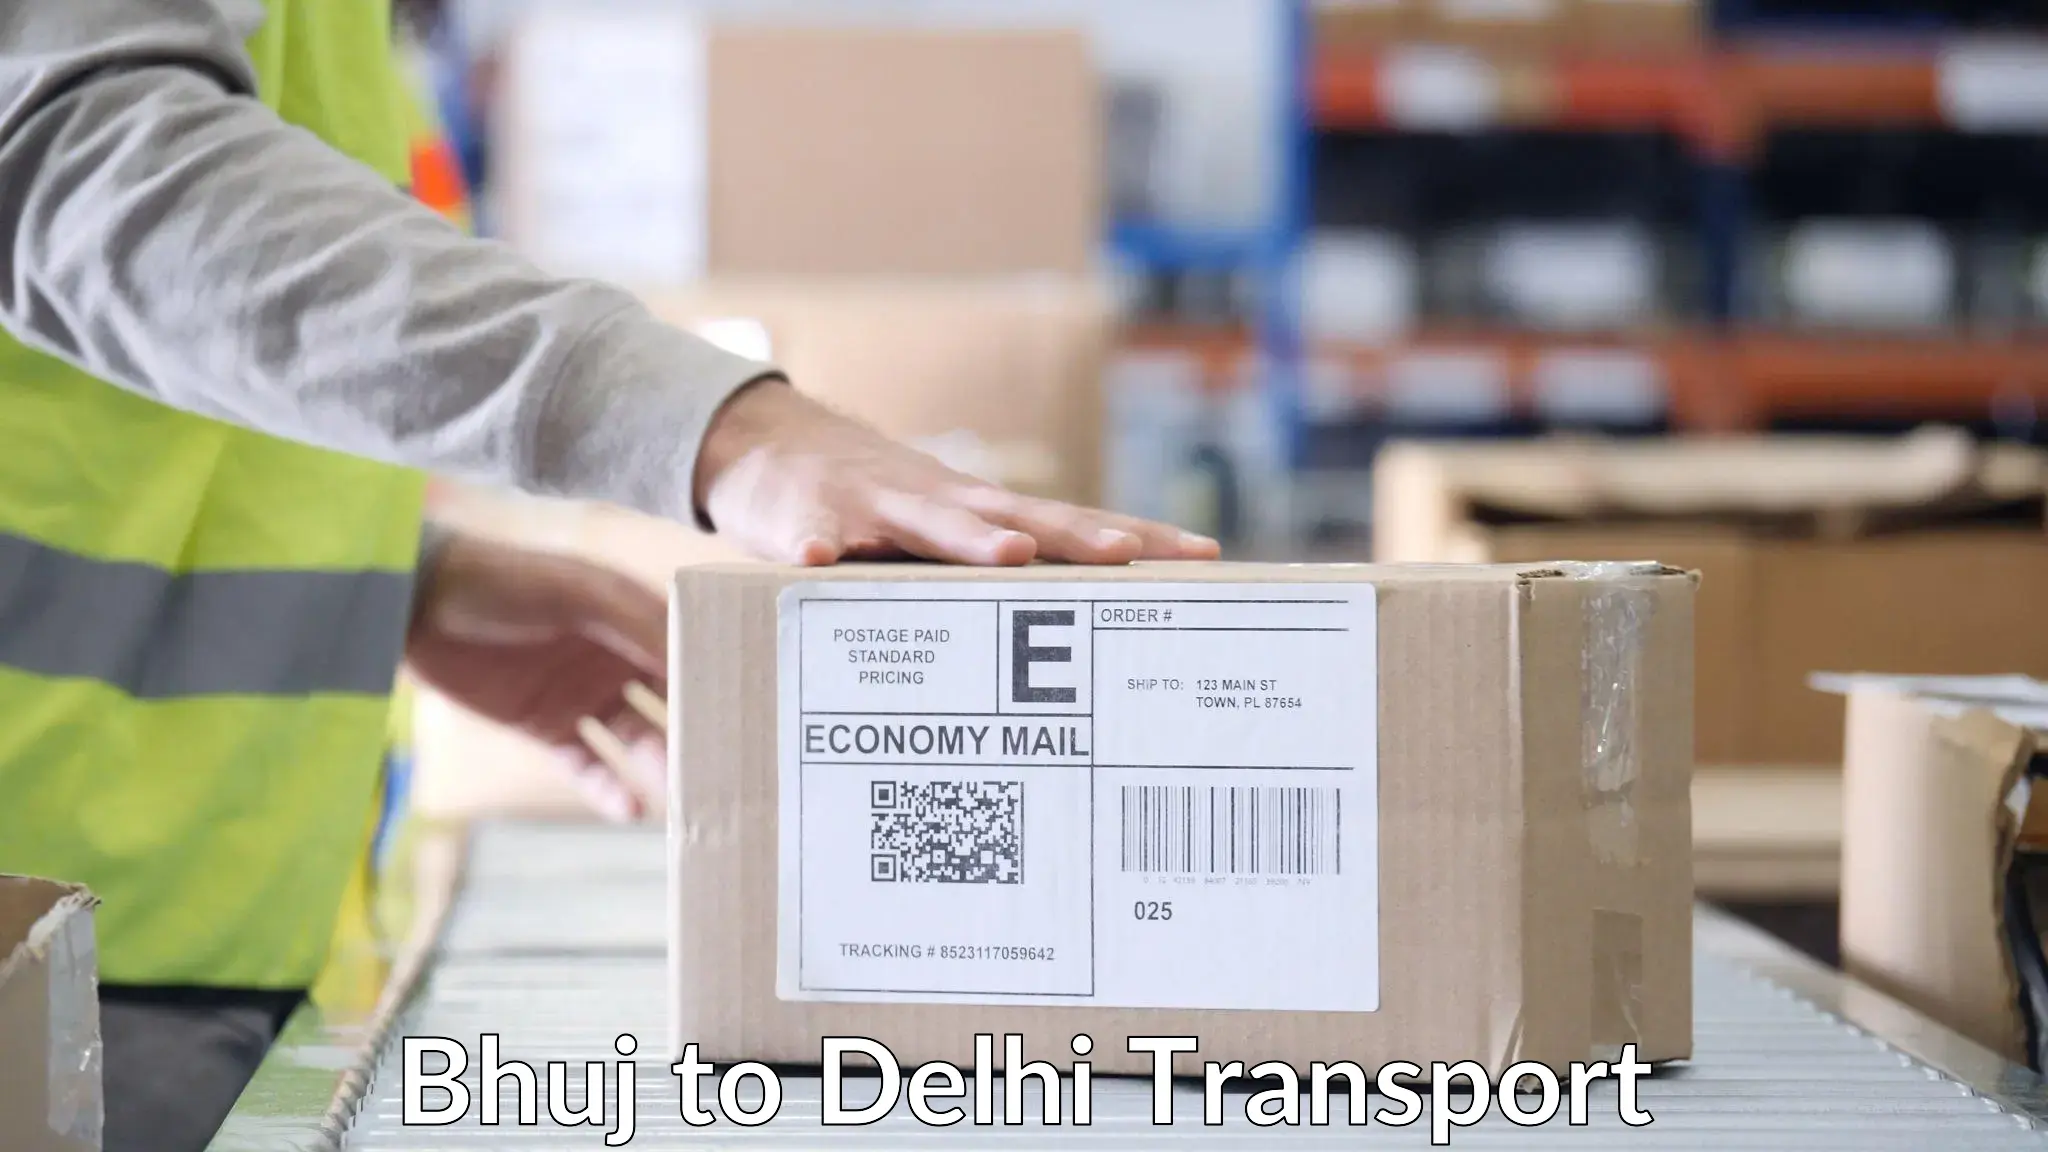 Daily transport service Bhuj to University of Delhi